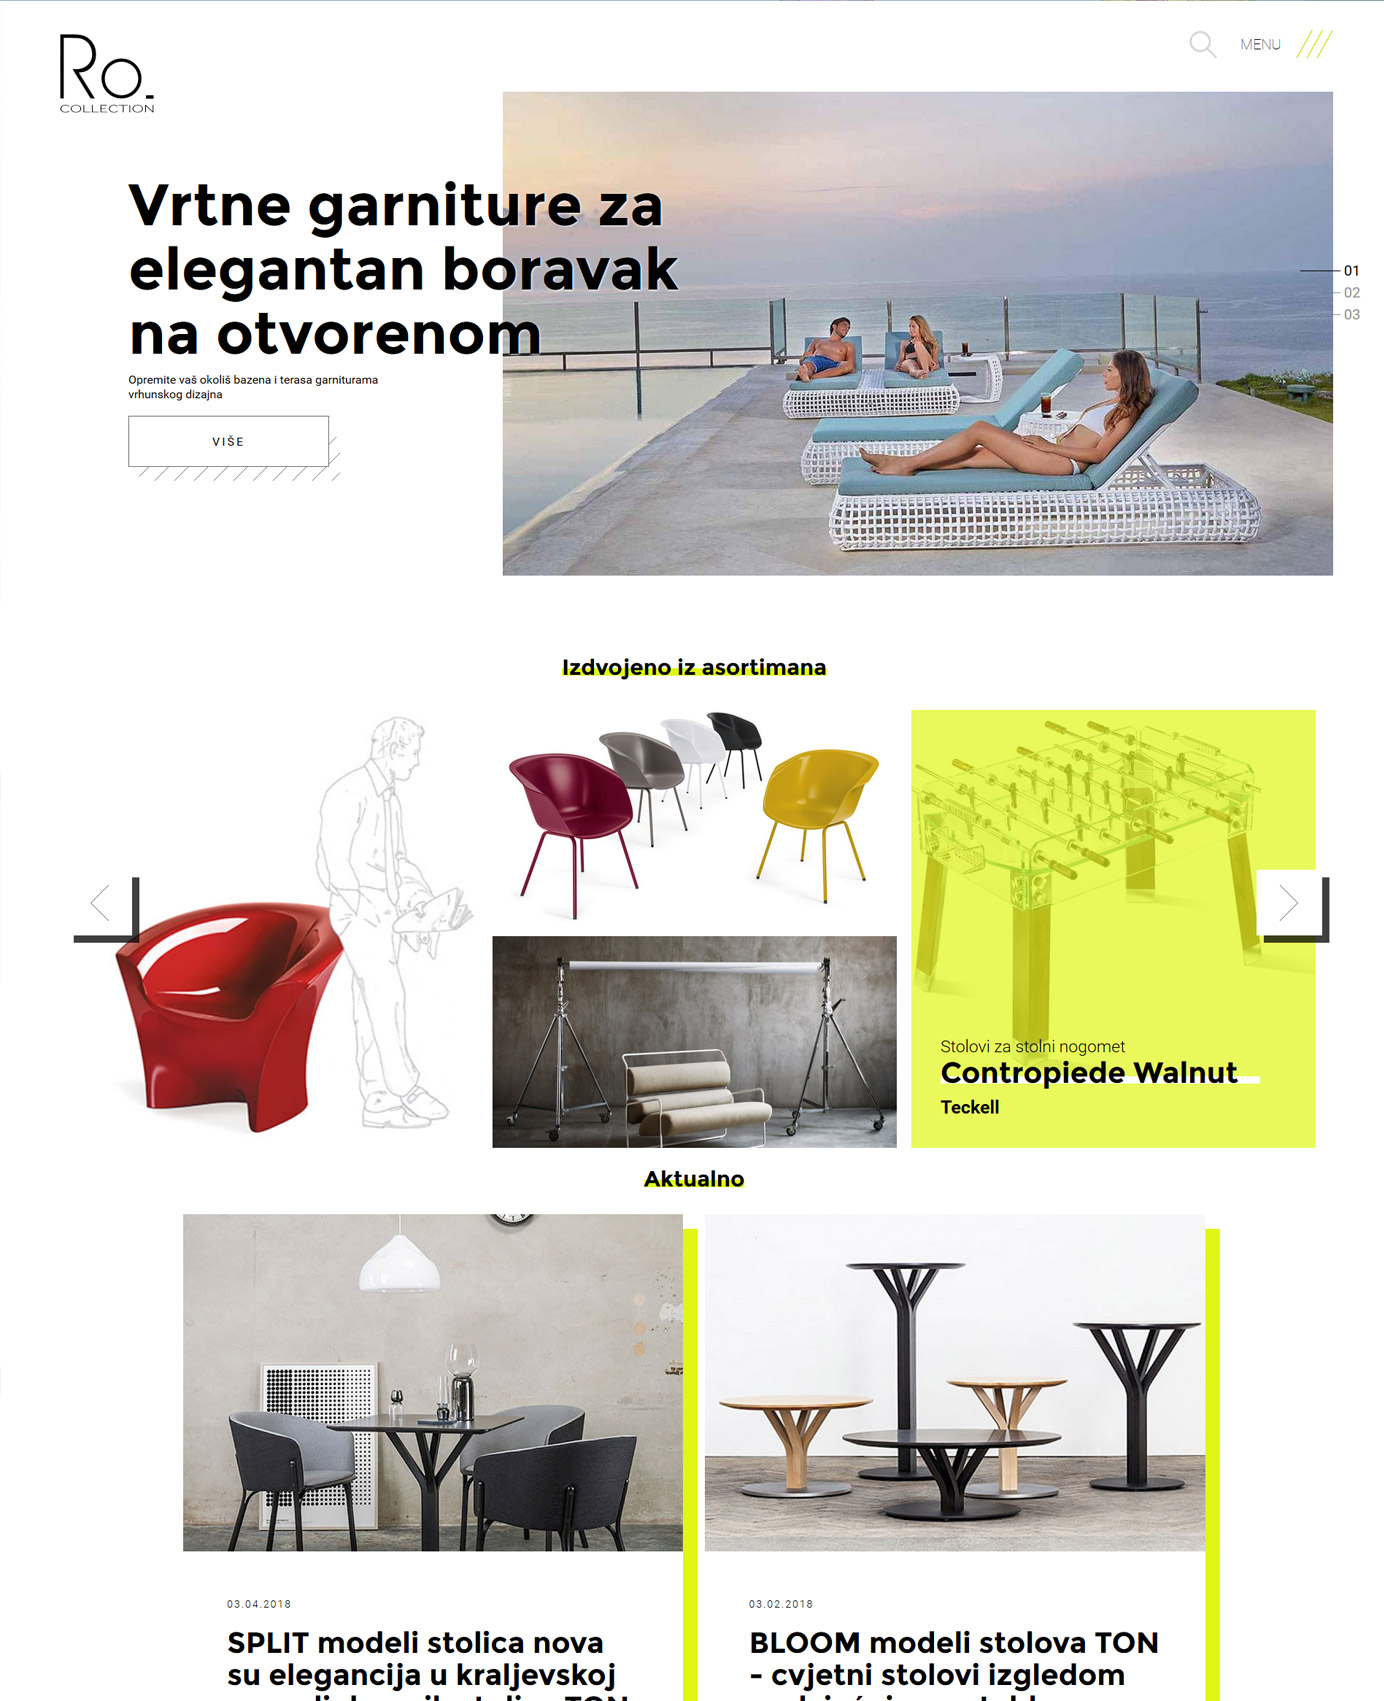 Dizajn i izrada web stranice - Ro. Collection - Bernardić studio